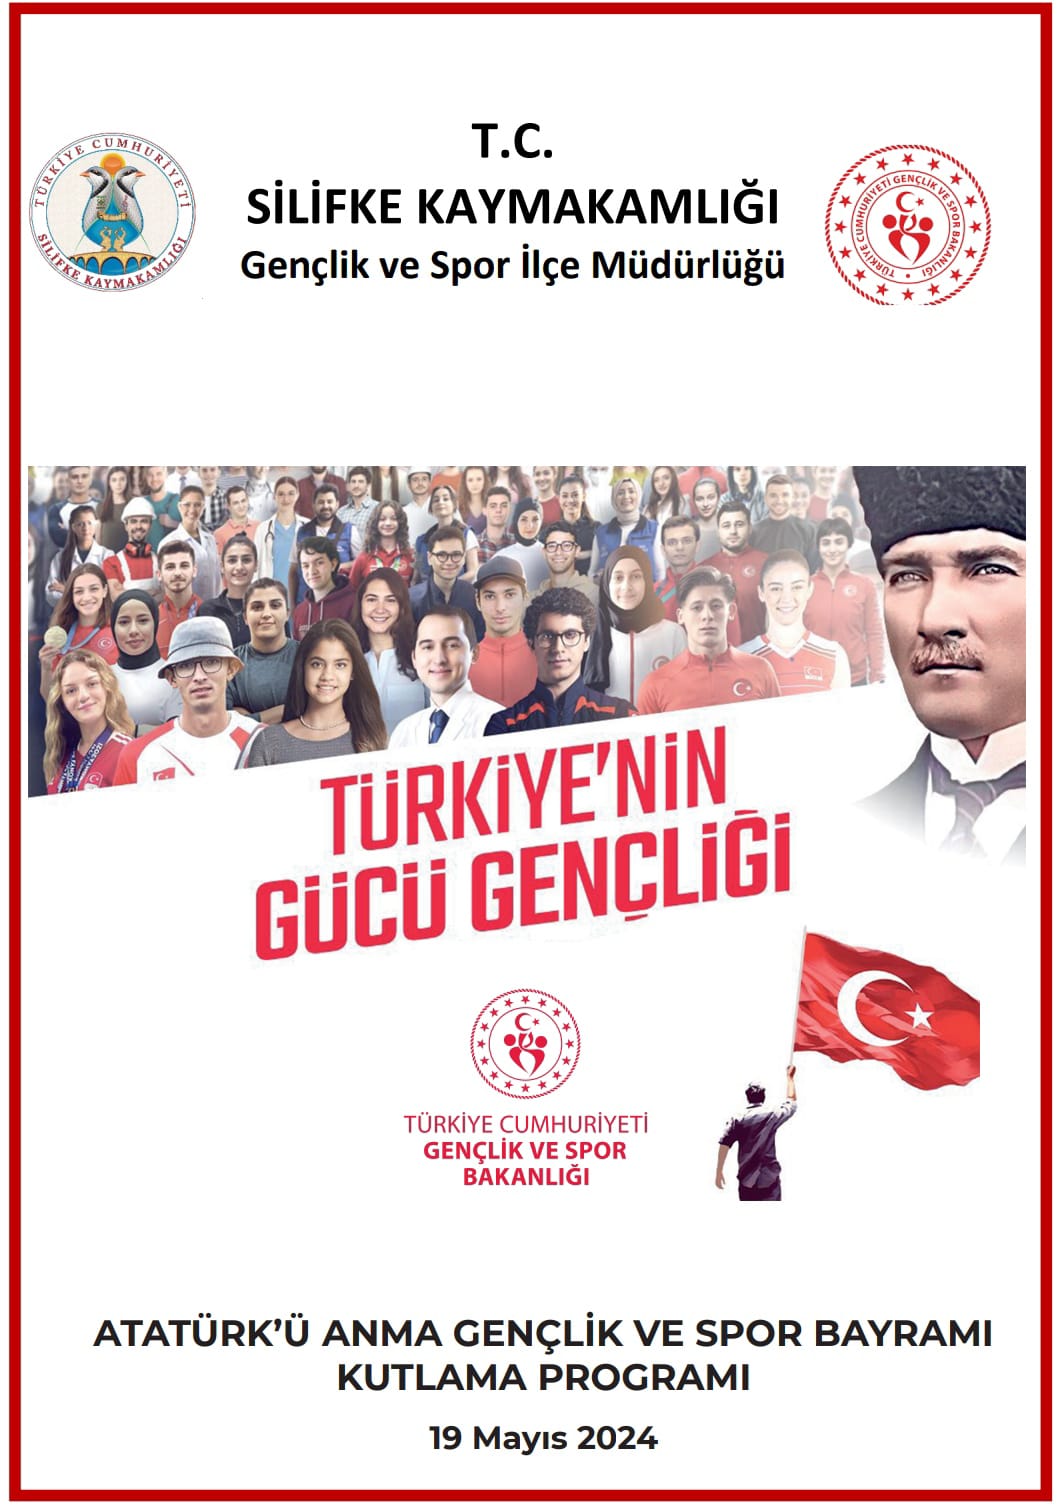 Atatürk'ü Anma ve Gençlik ve Spor Bayramı Kutlama Programı